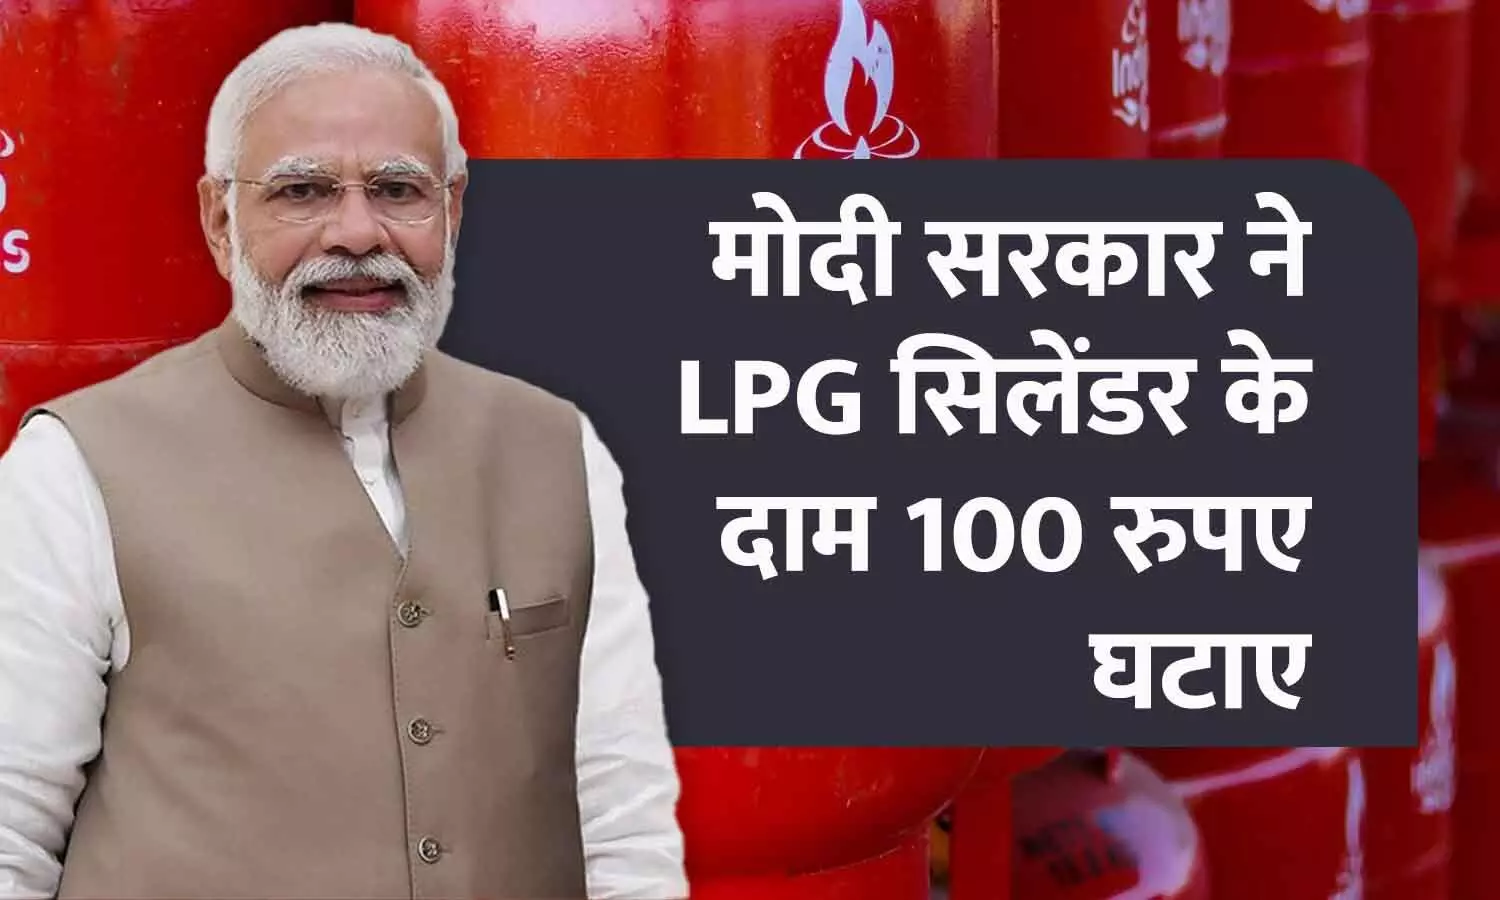 मोदी सरकार ने LPG सिलेंडर के दाम 100 रुपए घटाए: दिल्ली में ₹803 में मिलेगा घरेलू गैस सिलेंडर, पीएम बोलें- करोड़ों परिवारों का आर्थिक बोझ कम किया